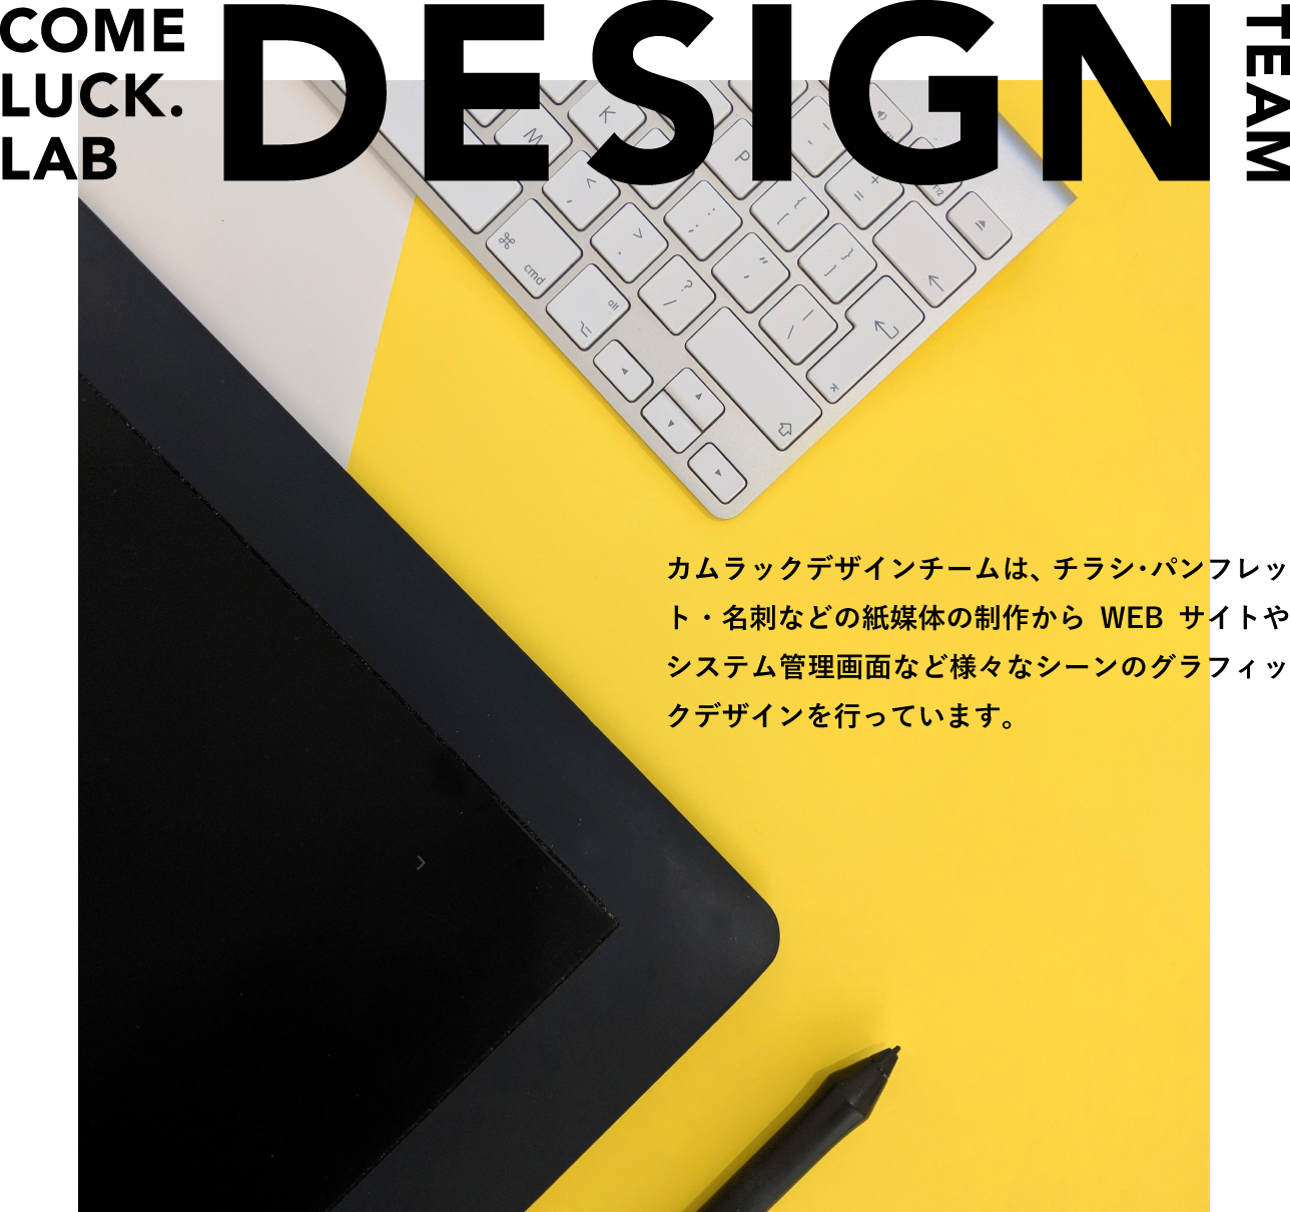 COMELUCK.LAB DESIGN TEAM カムラックデザインチームは、チラシ・パンフレット・名刺などの紙媒体の制作からWEBサイトやシステム管理画面など様々なシーンのグラフィックデザインを行っています。